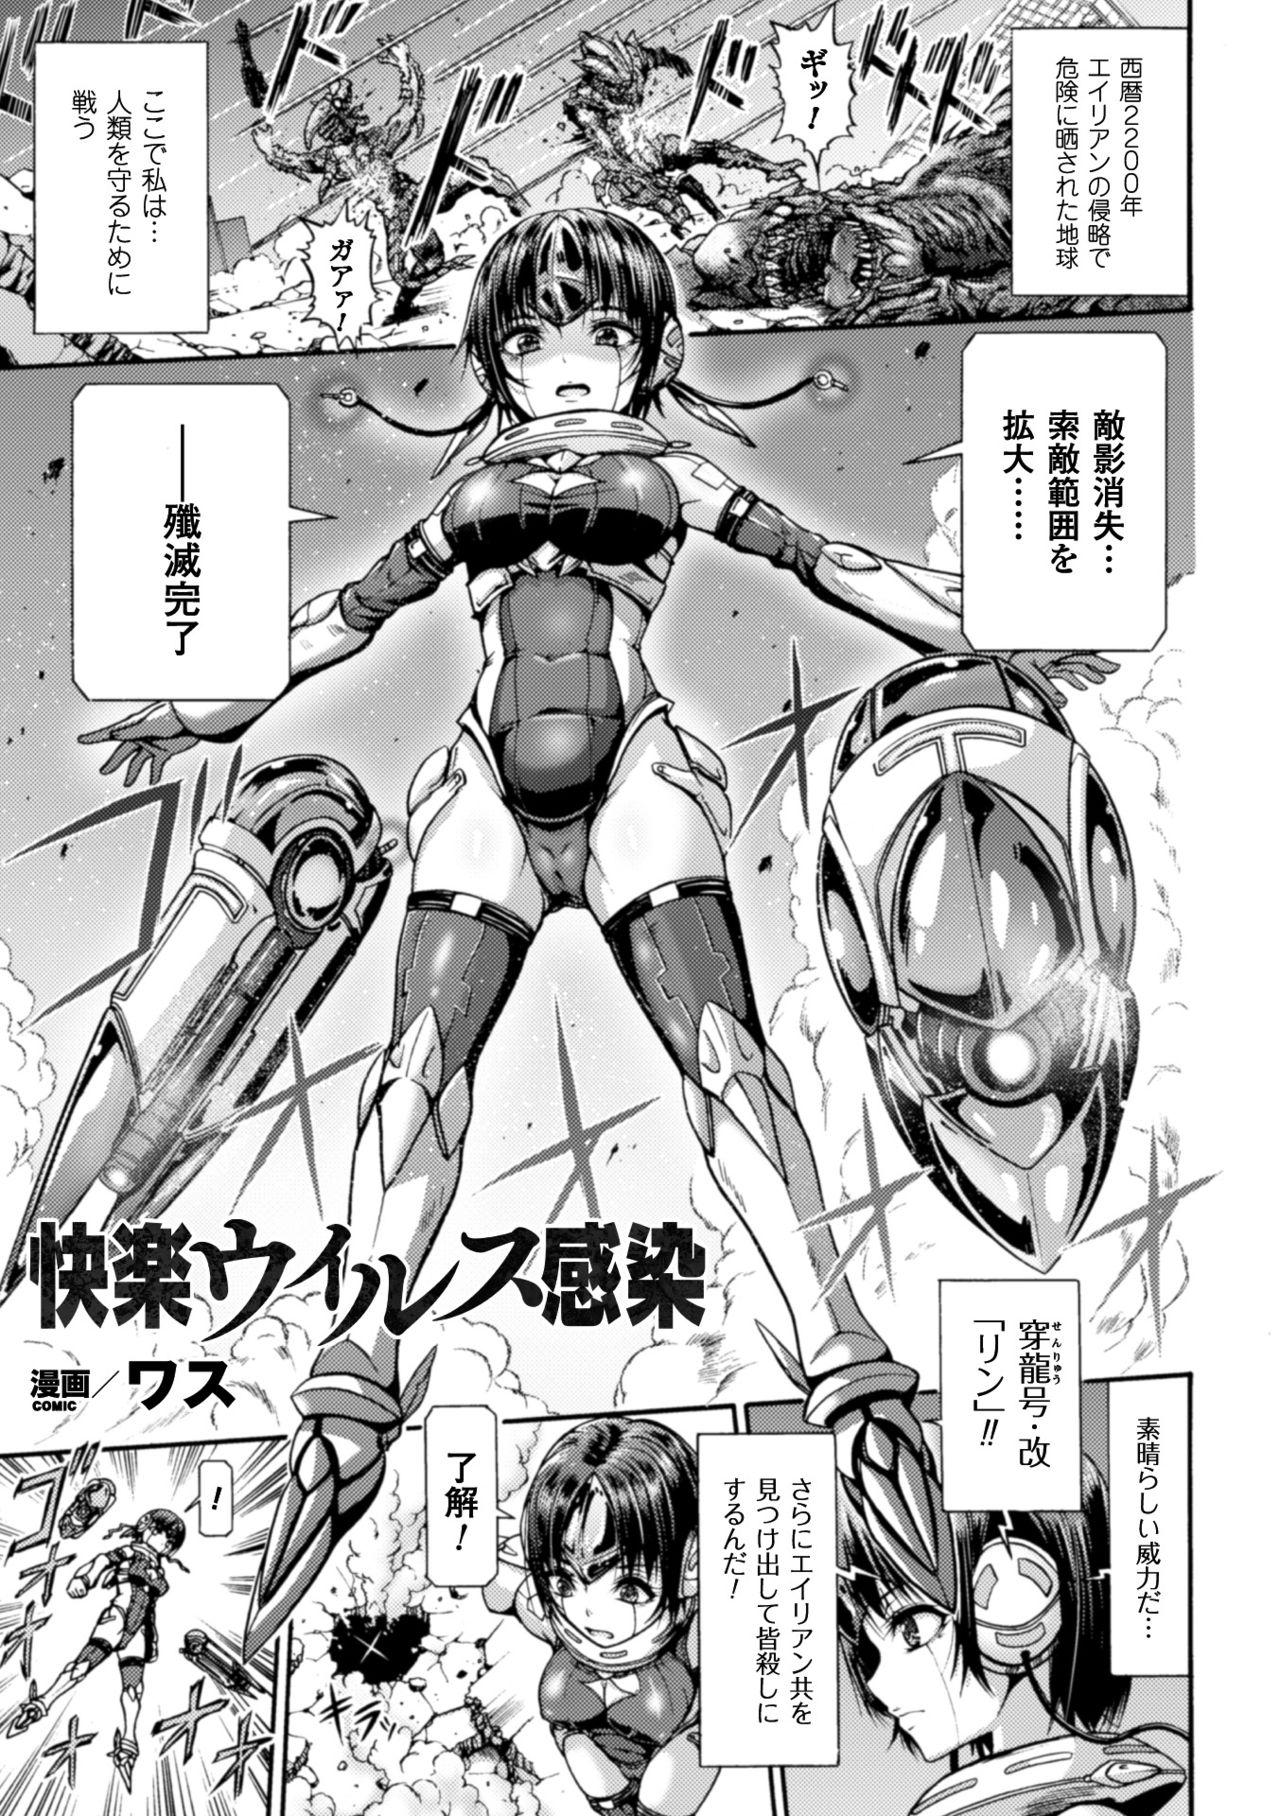 Seigi no Heroine Kangoku File Vol. 8 58